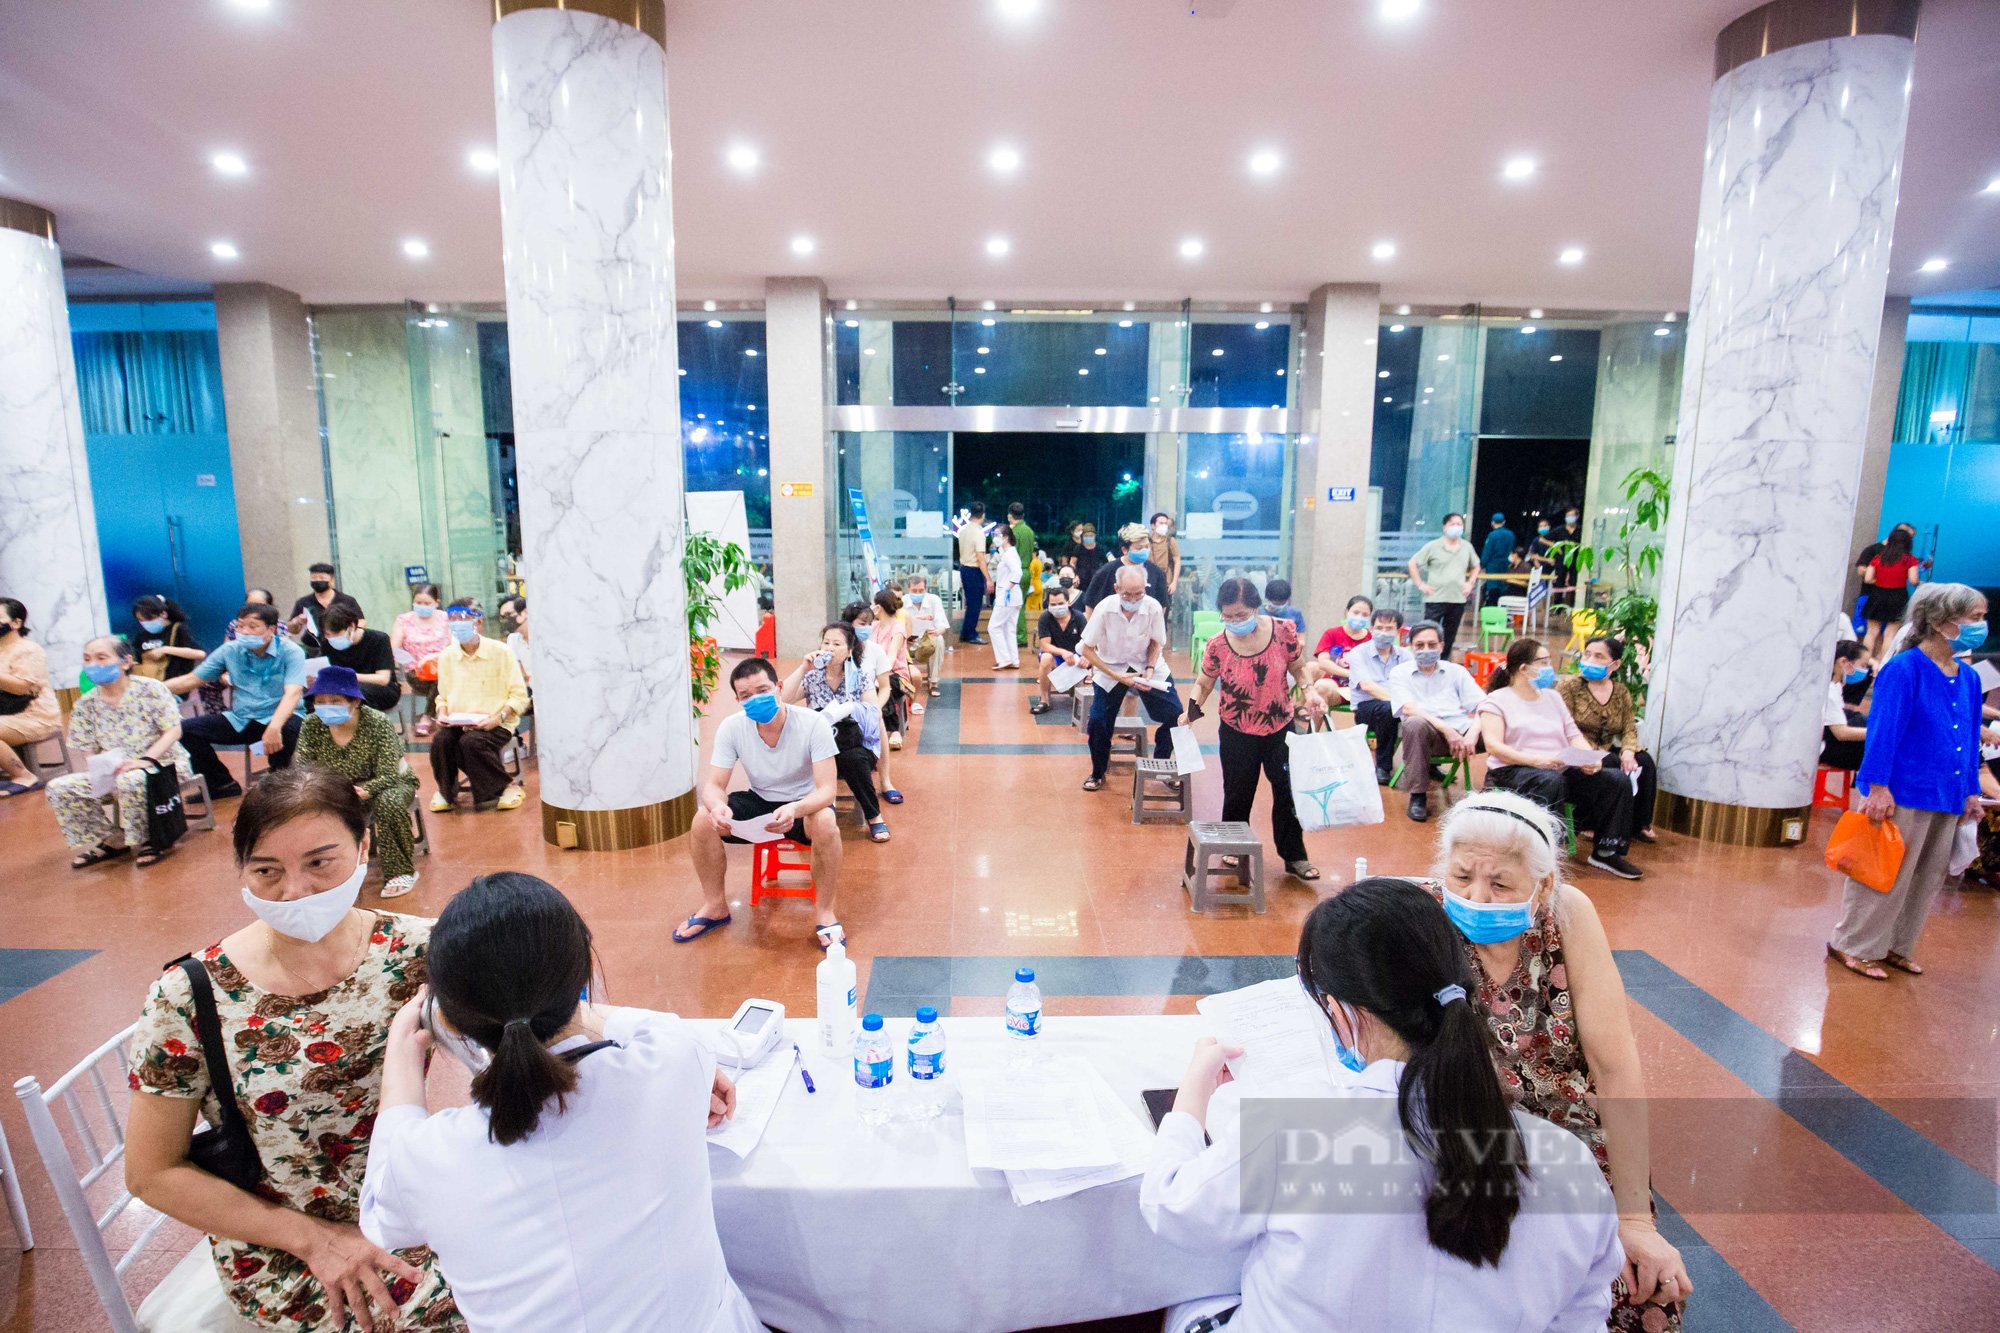 Tăng tốc tiêm chủng từ sáng tới đêm cho hàng nghìn người dân tại Hà Nội - Ảnh 5.